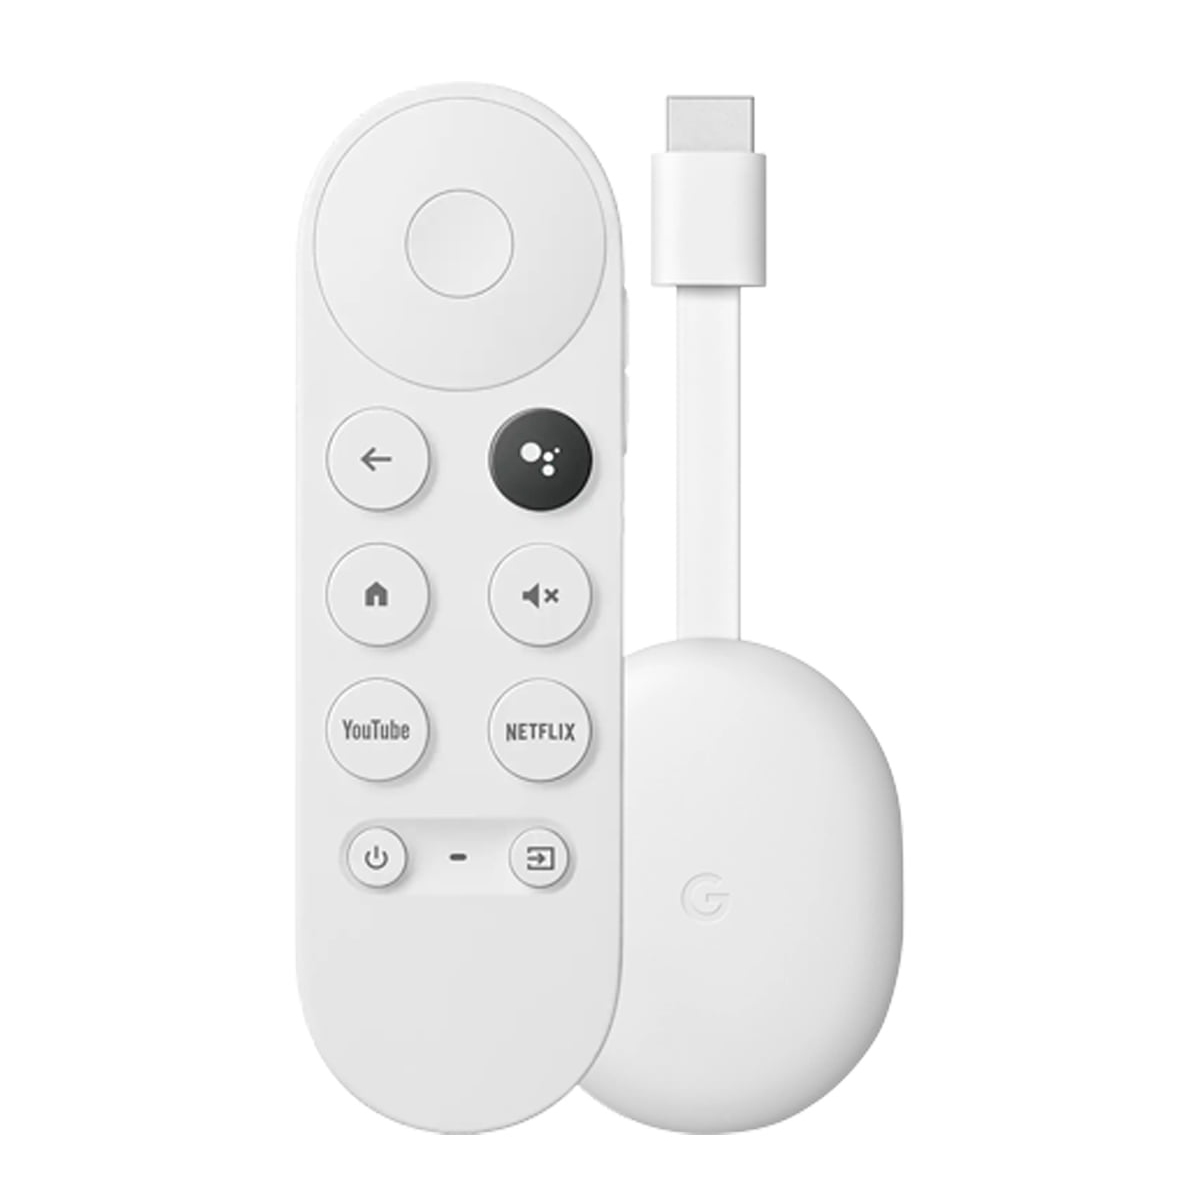 Google Chromecast Tv 4 1080p Fhd Control Remoto.